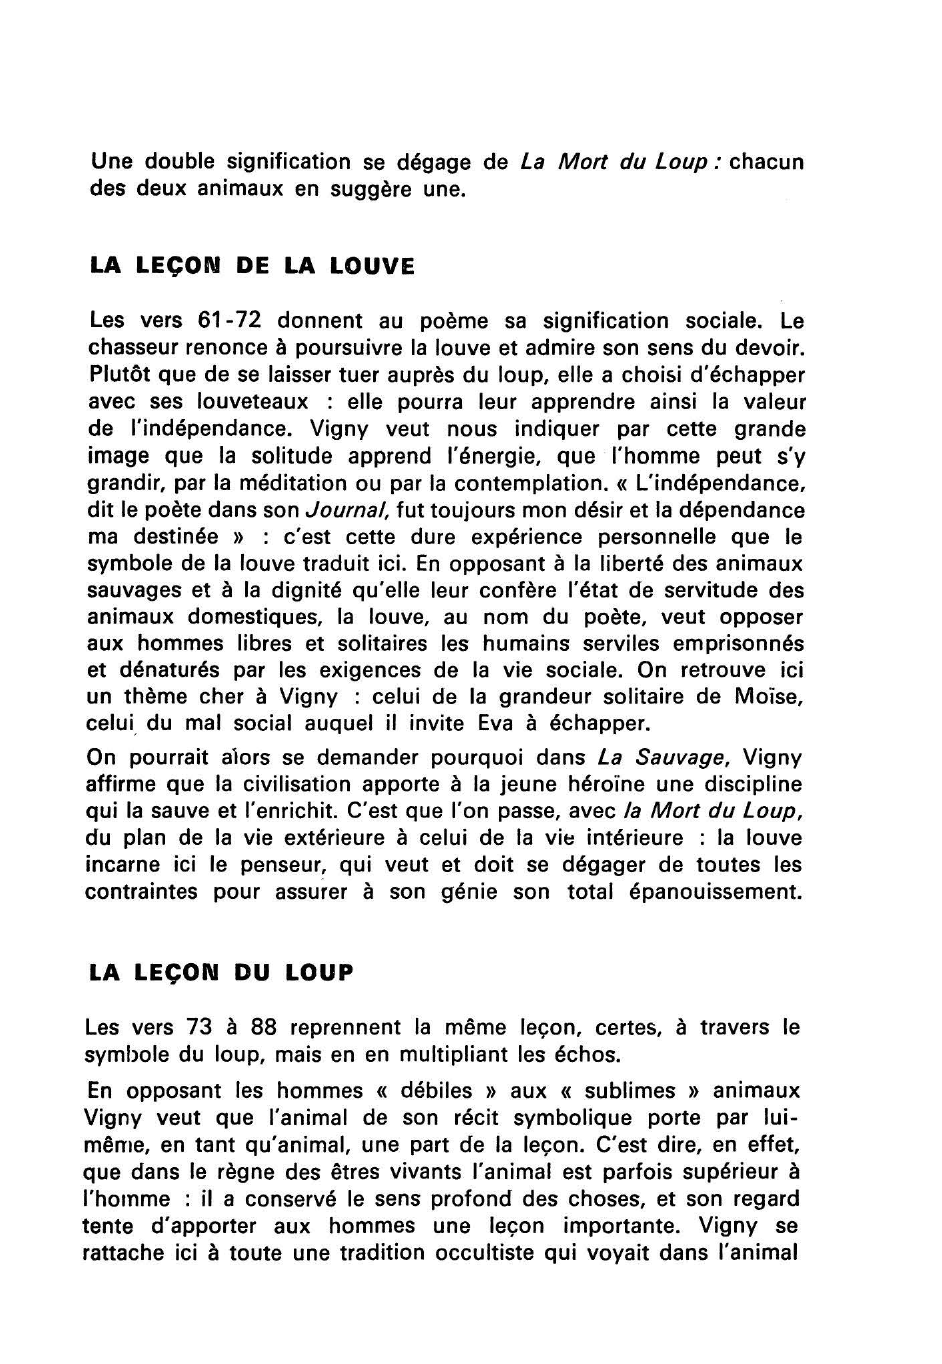 Prévisualisation du document Ecrit au château du M***, 1843. A. DE VIGNY, Les Destinées, La Mort du Loup, v. 61-88.